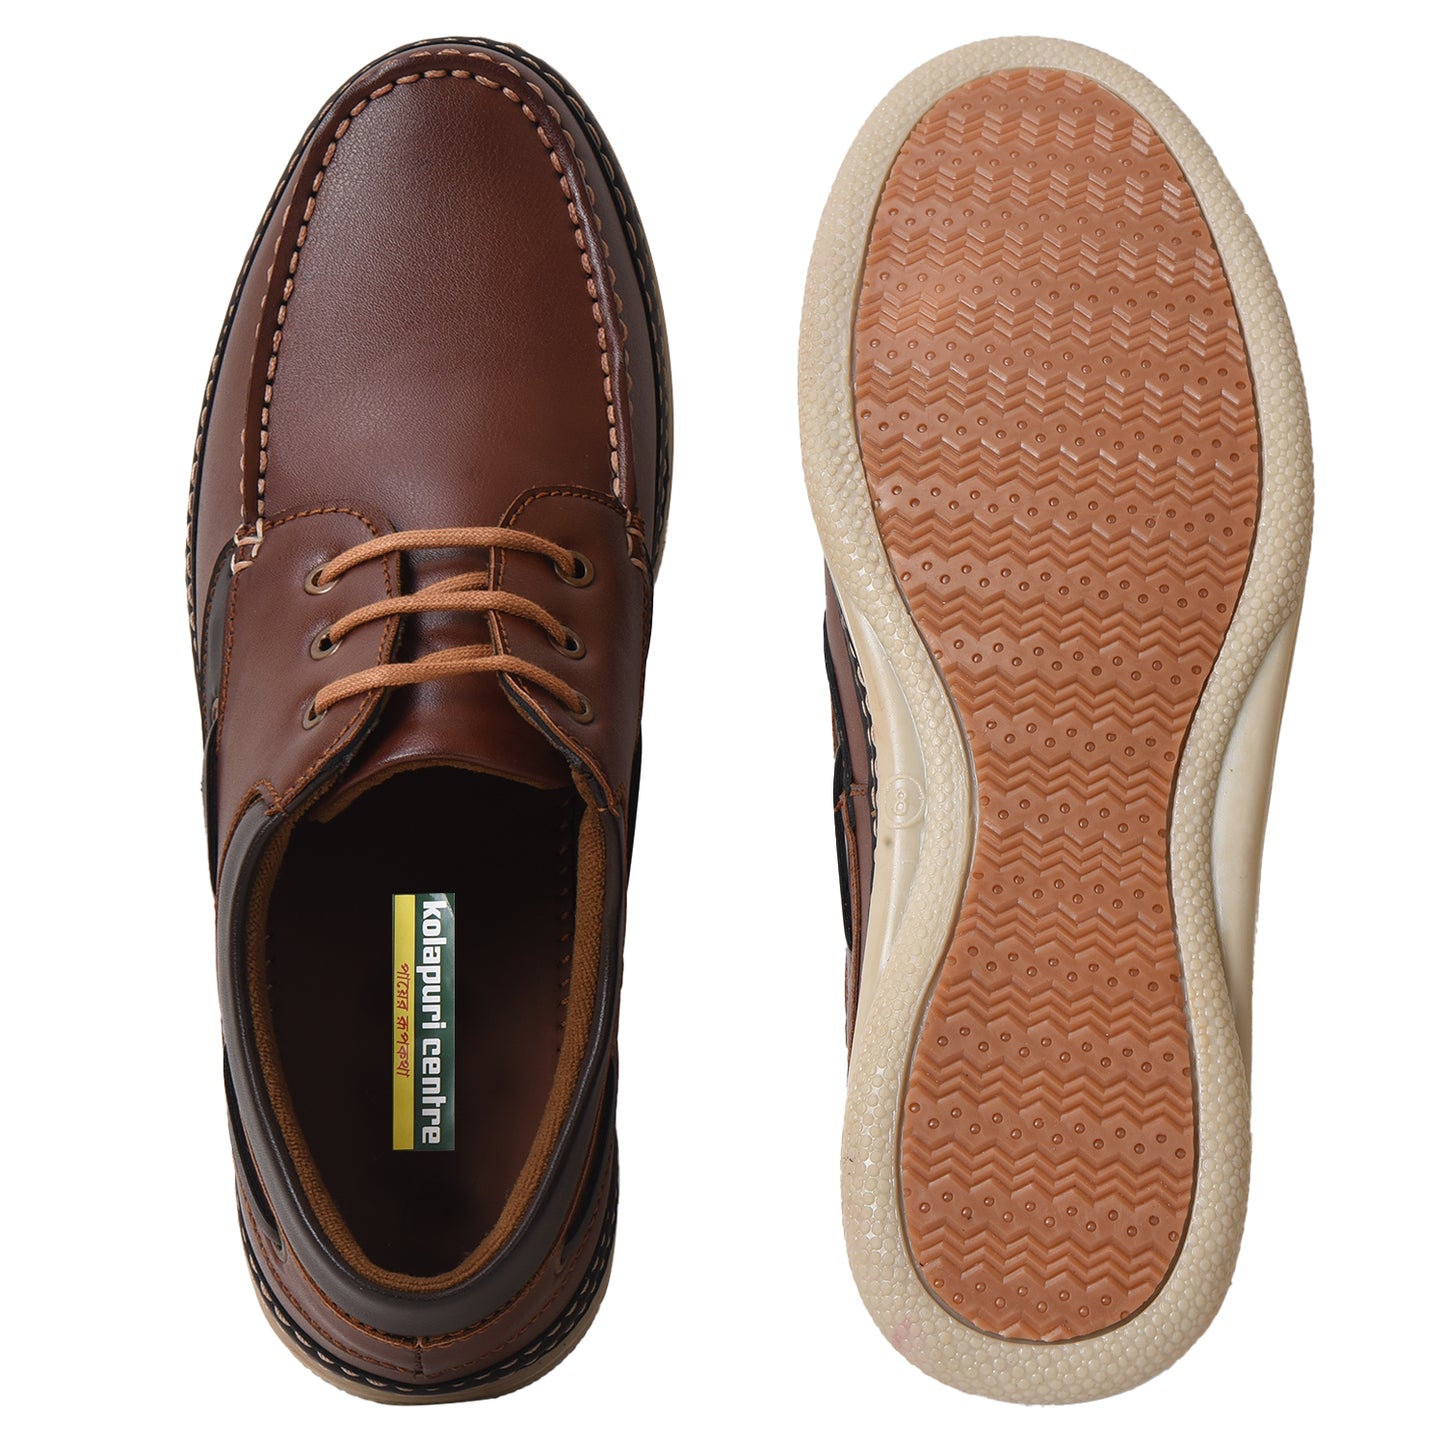 Kolapuri Centre Men's Shoe with lace (TAN)– 4662